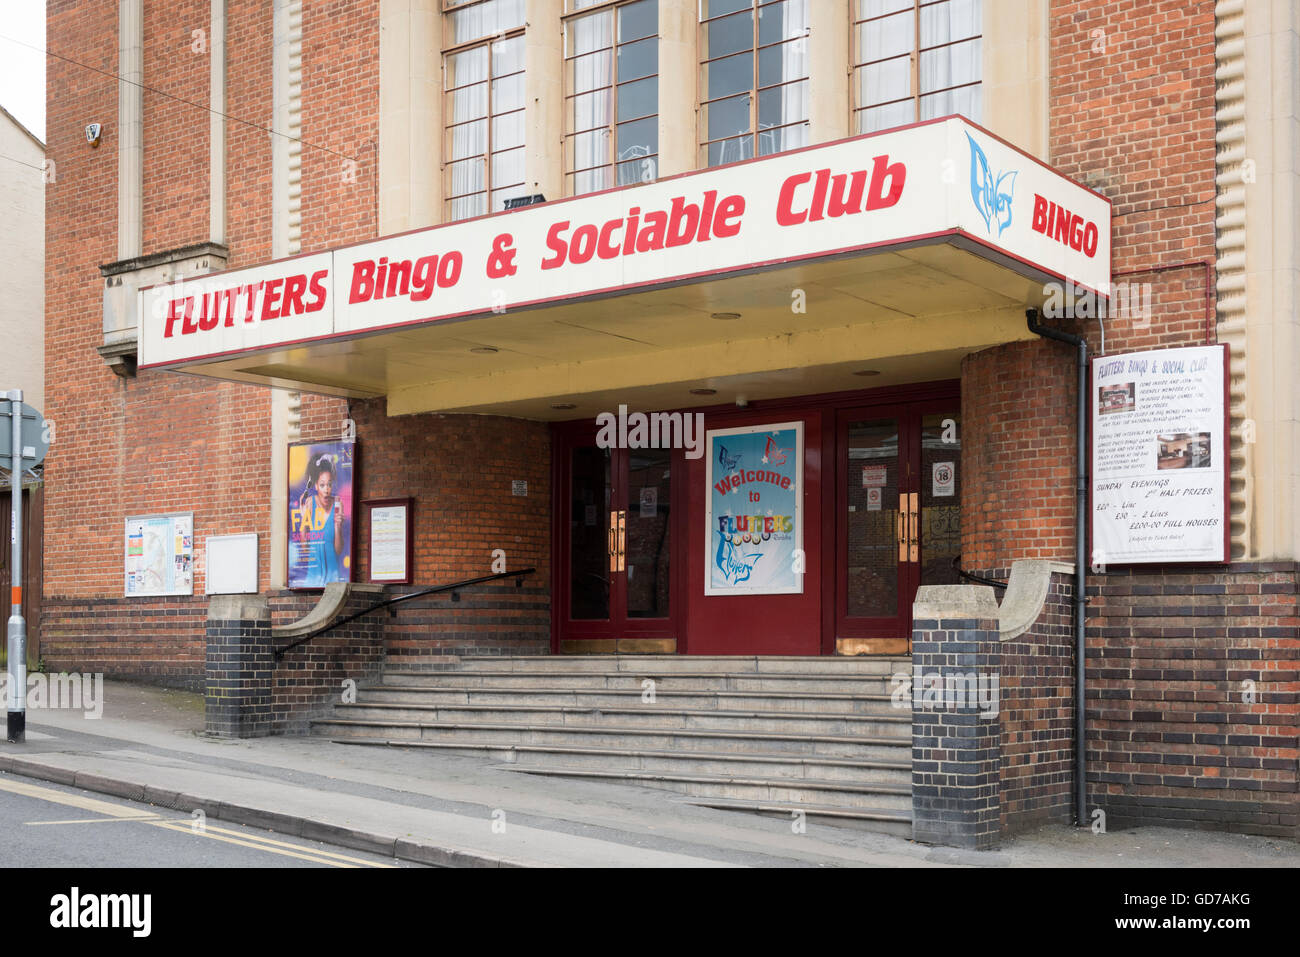 El Bingo aleteos y sociable edificio Club Rushden Northamptonshire UK Foto de stock